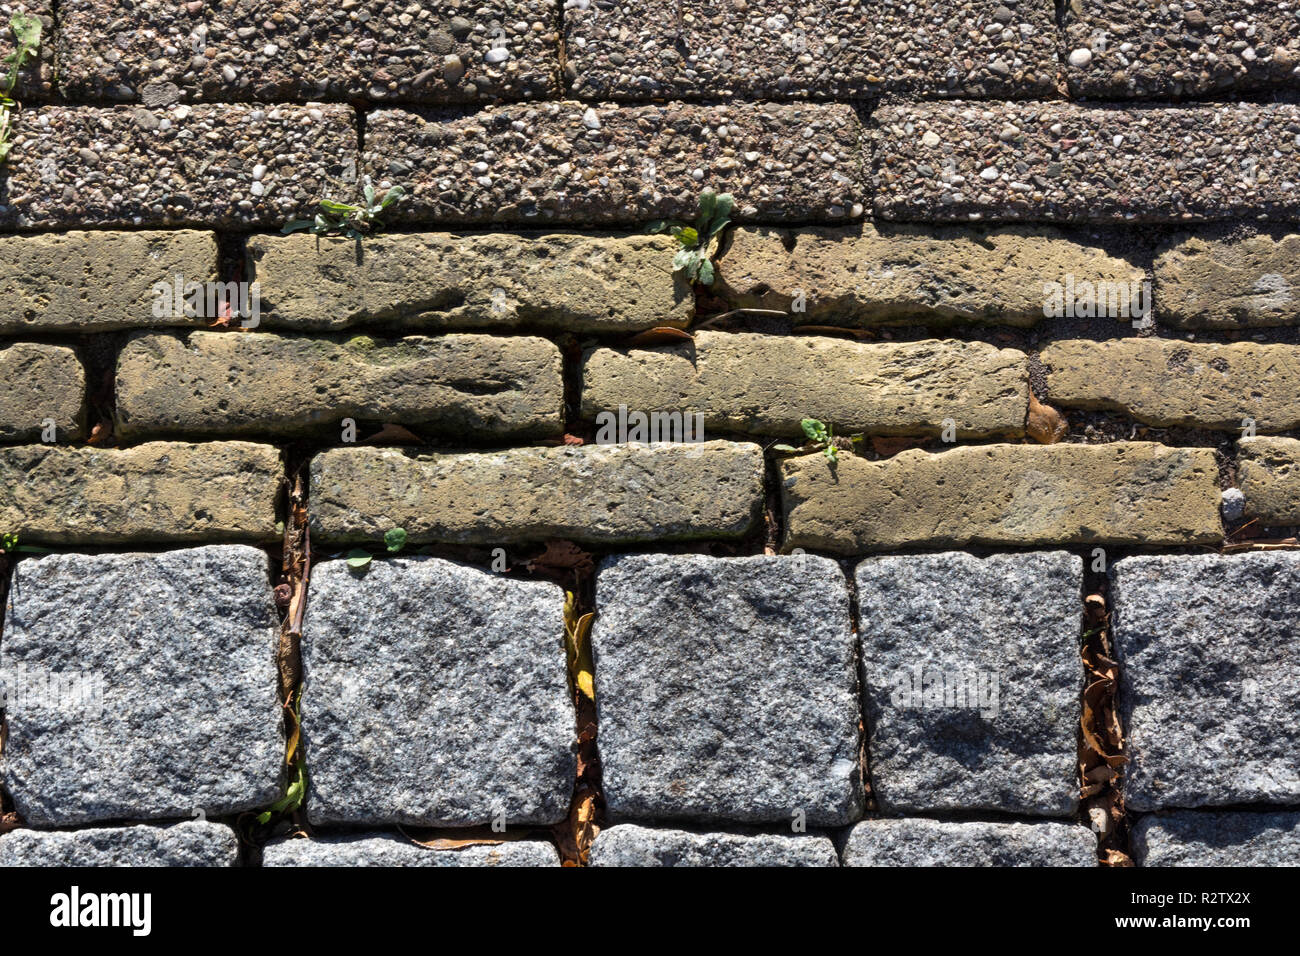 Motivo decorativo di tre diversi tipi di pietra utilizzati l'uno accanto all'altro. Per servire come una superficie per il traffico, un passaggio pedonale, un percorso o una strada. Foto Stock